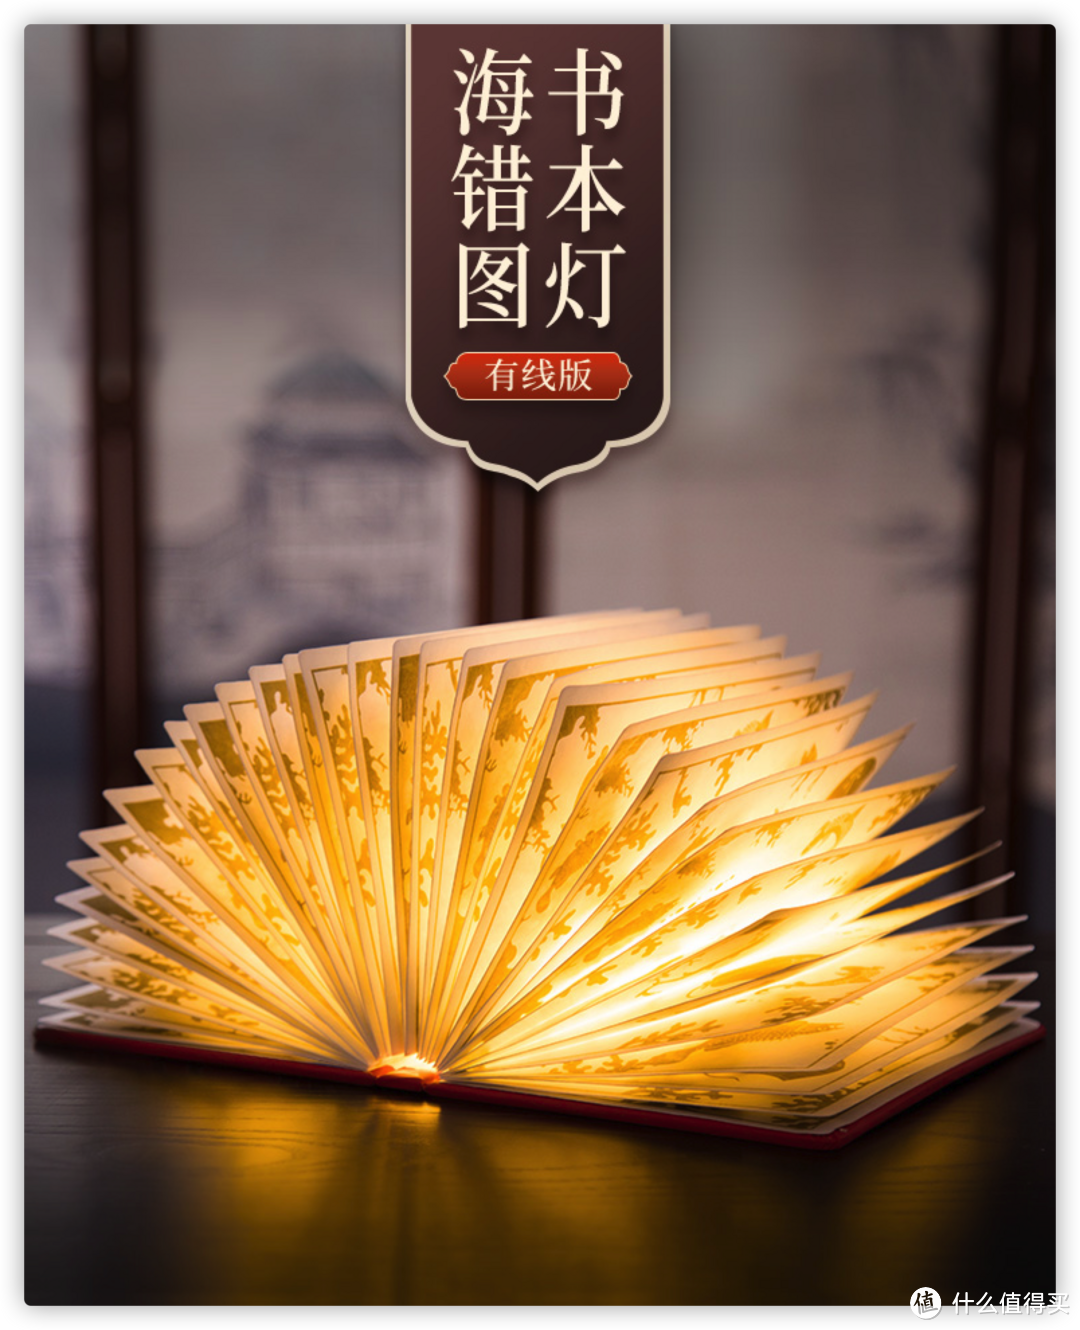 故宫文化越来越神了！人工裱糊的海错图书本灯，太惊艳了！